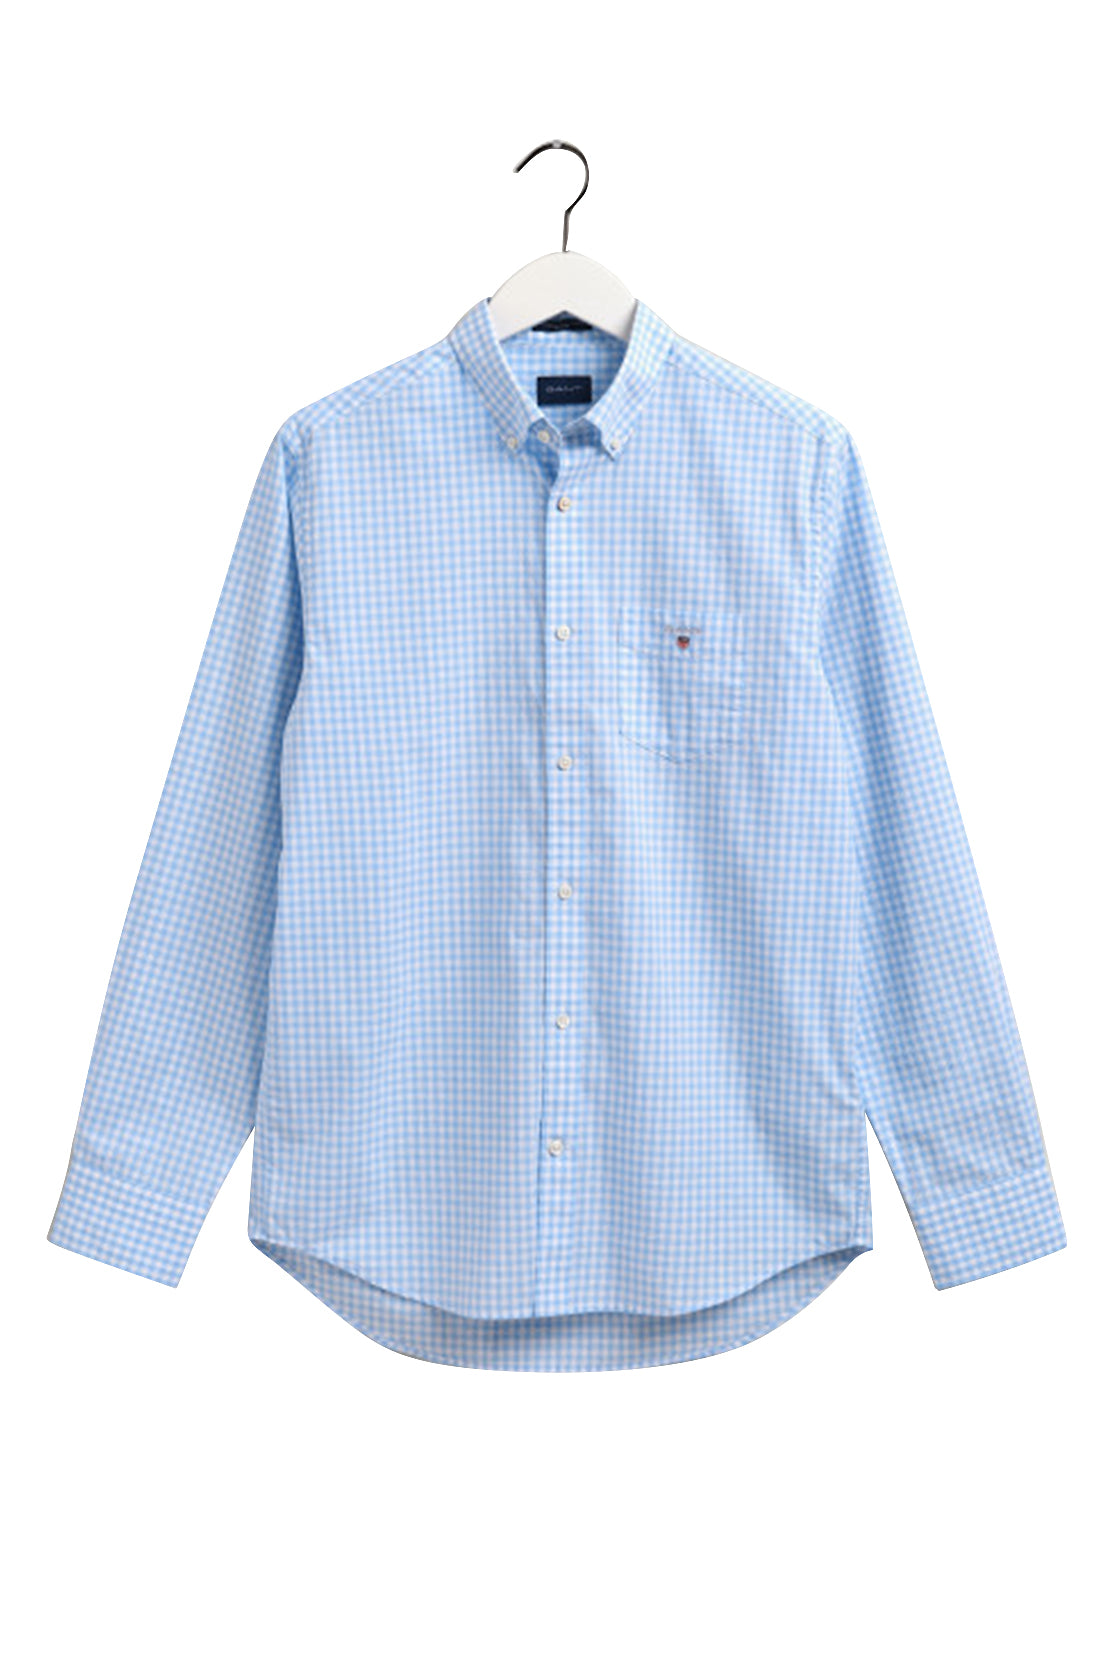 Gant Gingham Regular Shirt Capri Blue